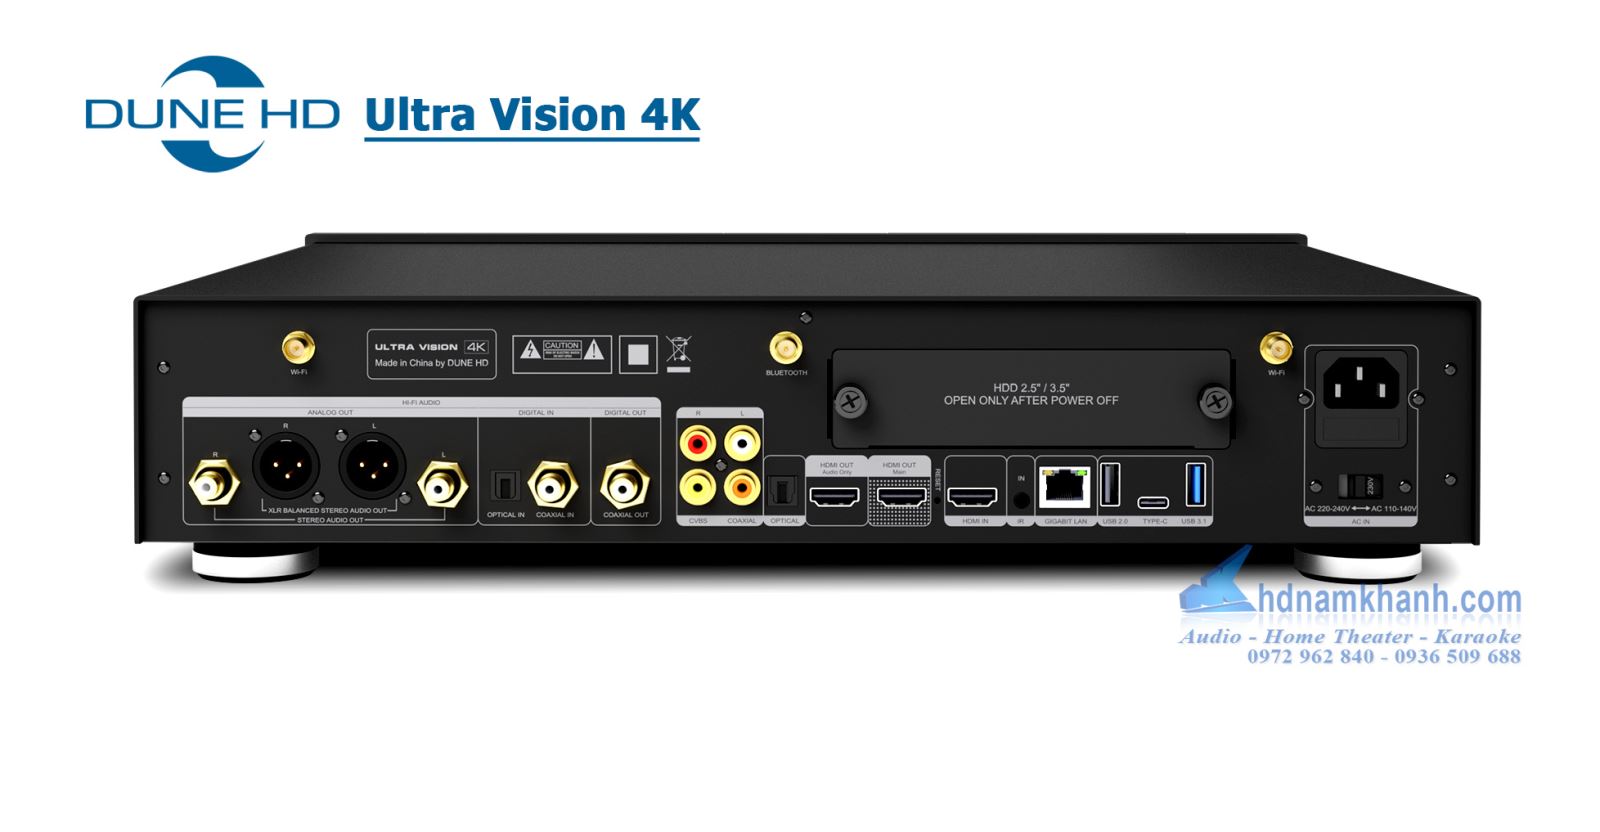 Đầu Dune HD Ultra Vision 4K - Đầu Phát Flagship High-End DAC